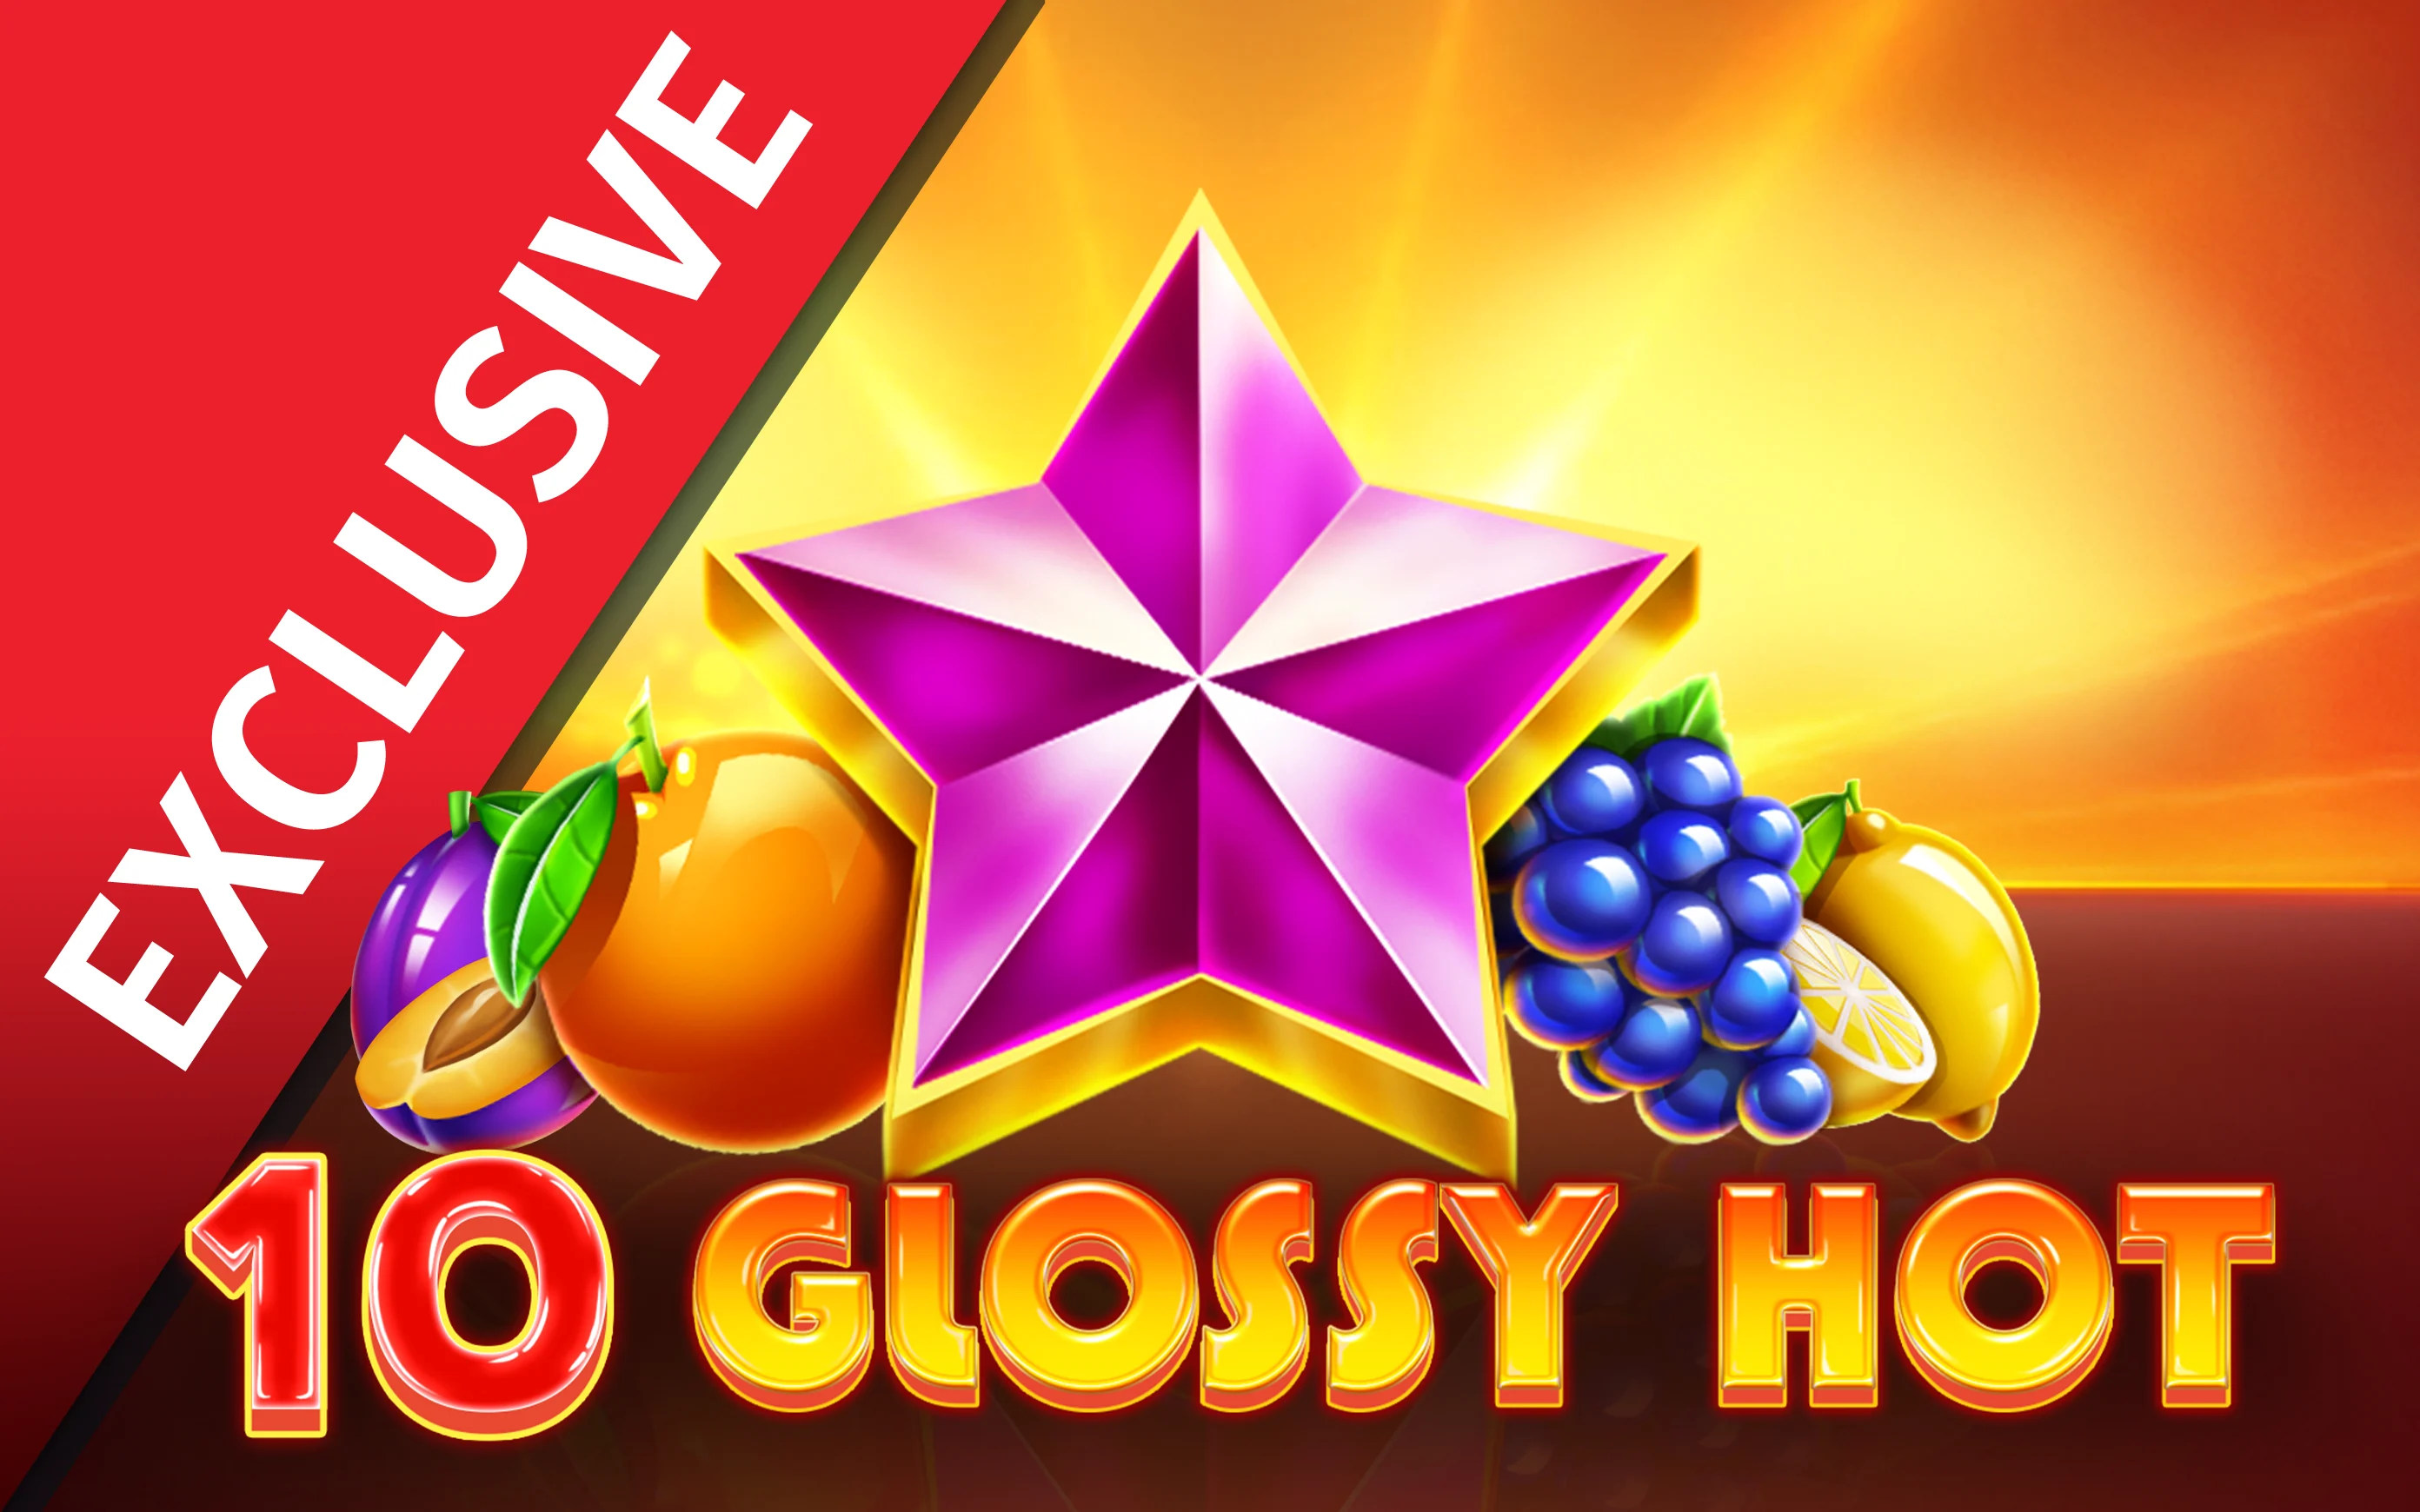 Play 10 Glossy Hot on Starcasino.be online casino